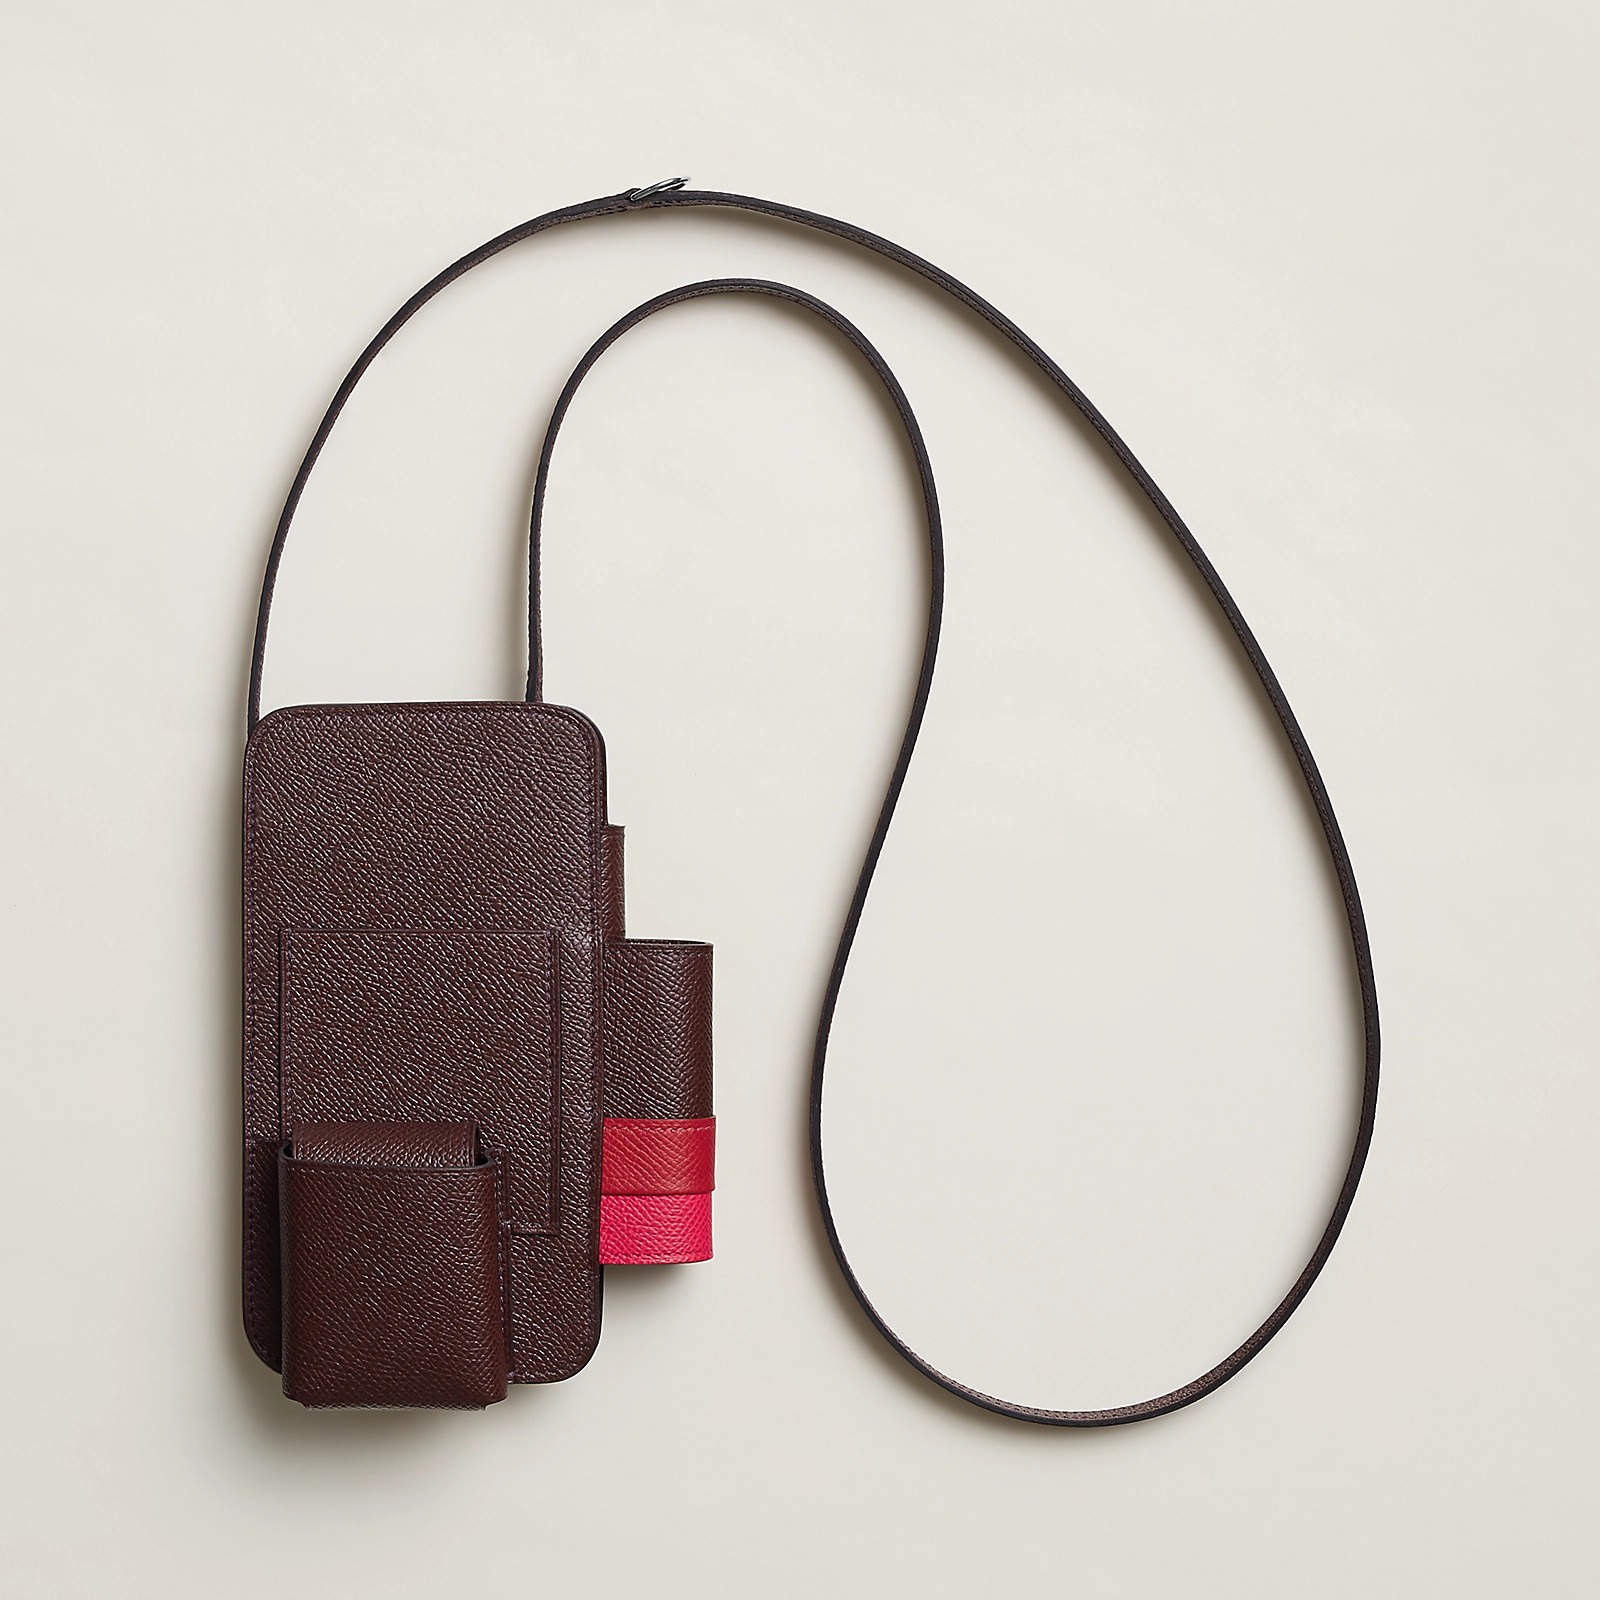 Hermes's Hermesway phone sling in black leather